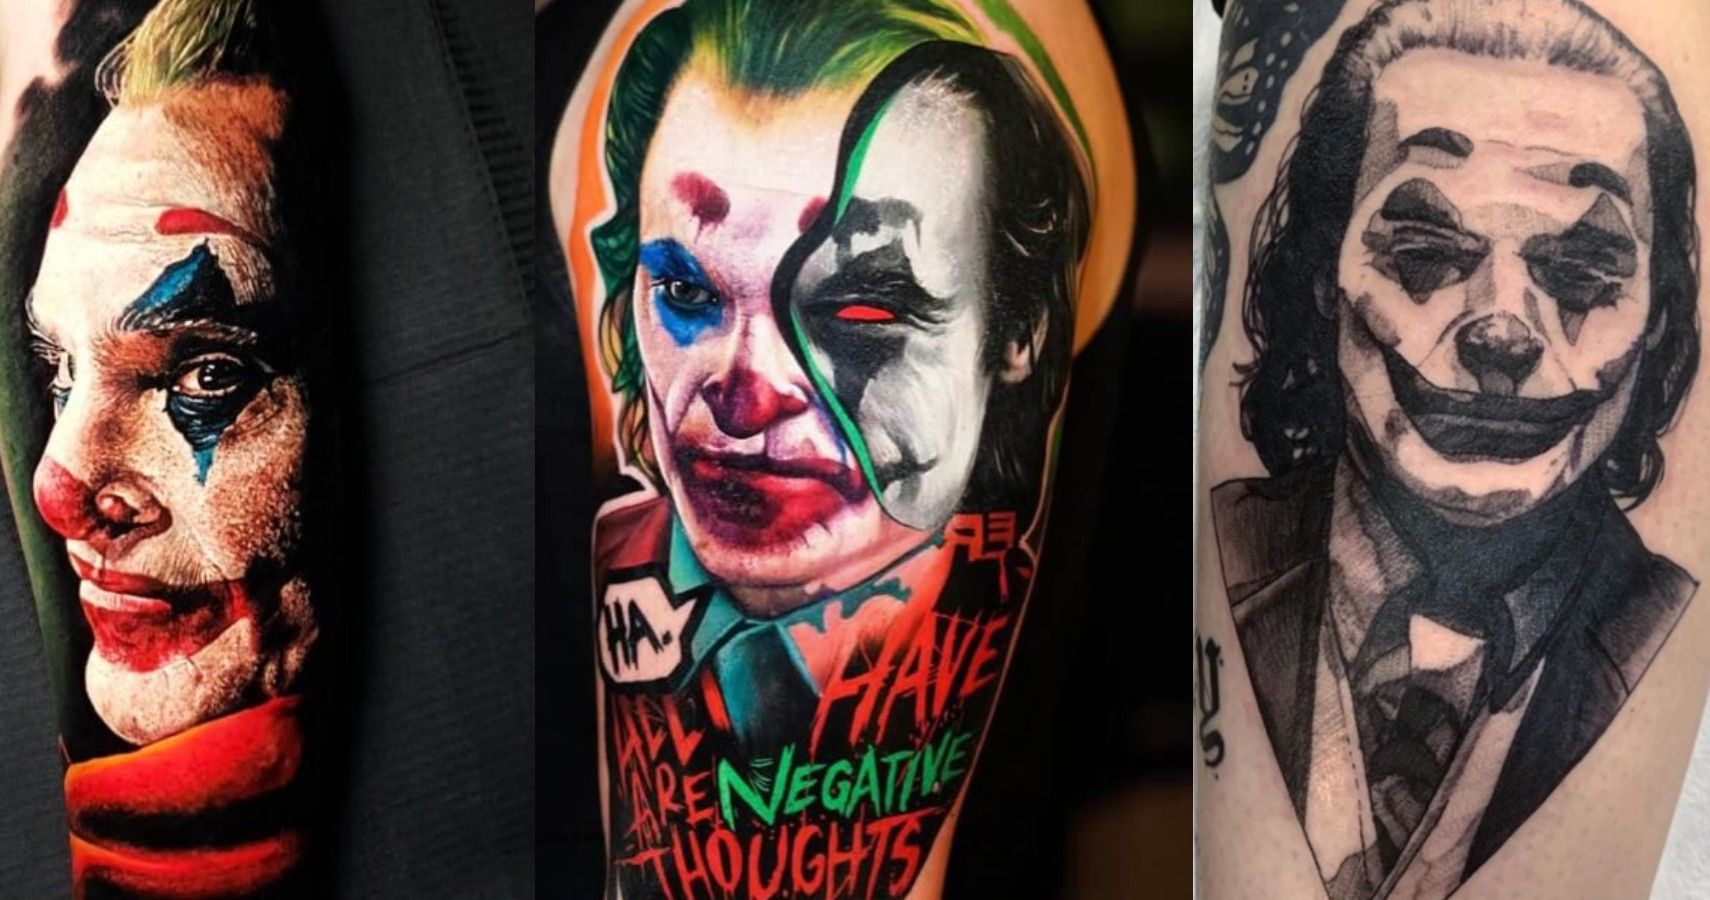 Joker tattoo by Tomyslav on DeviantArt